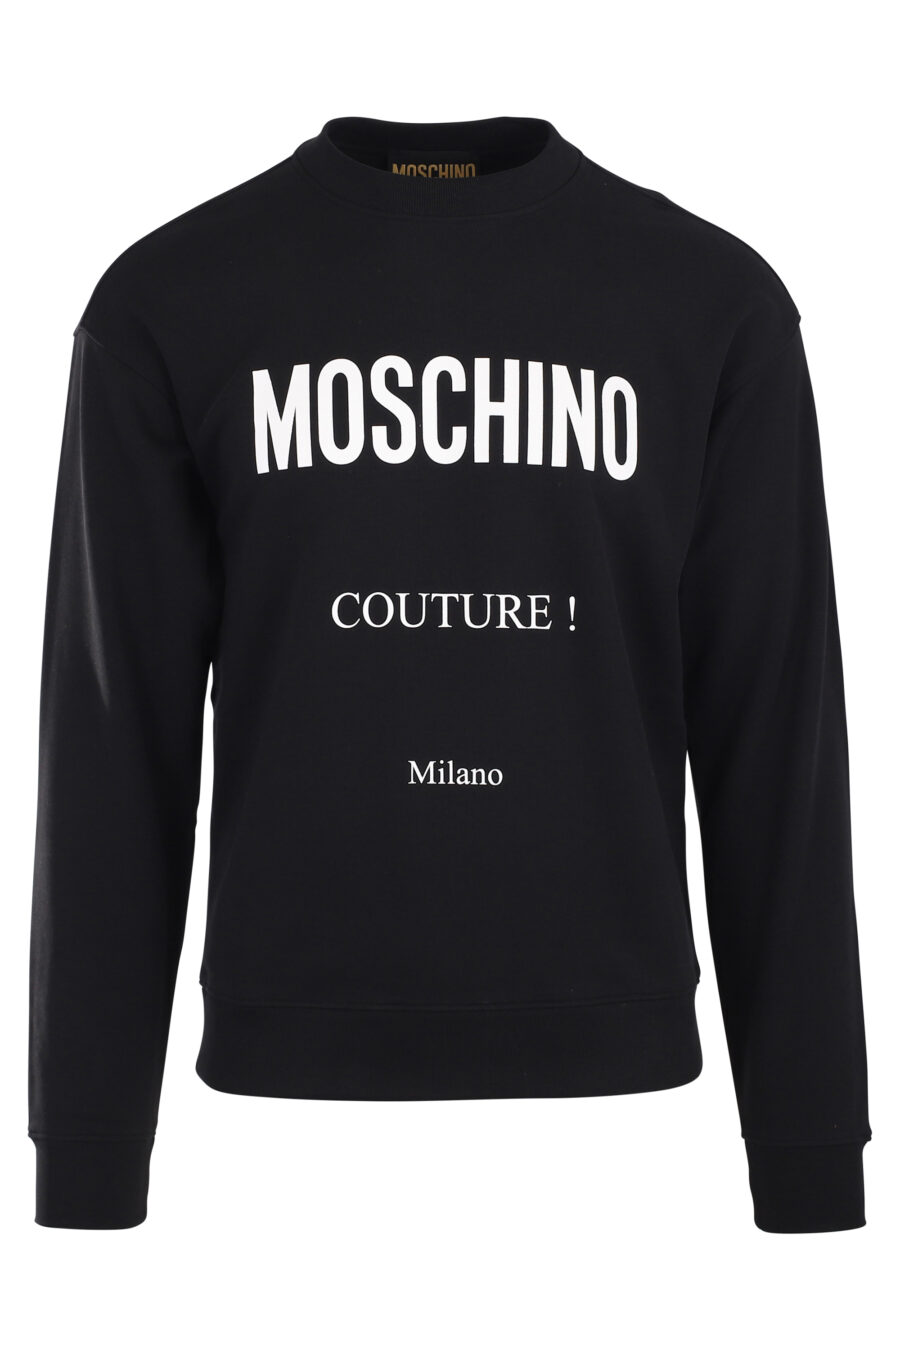 Schwarzes Sweatshirt mit Mailand-Logo - IMG 9882